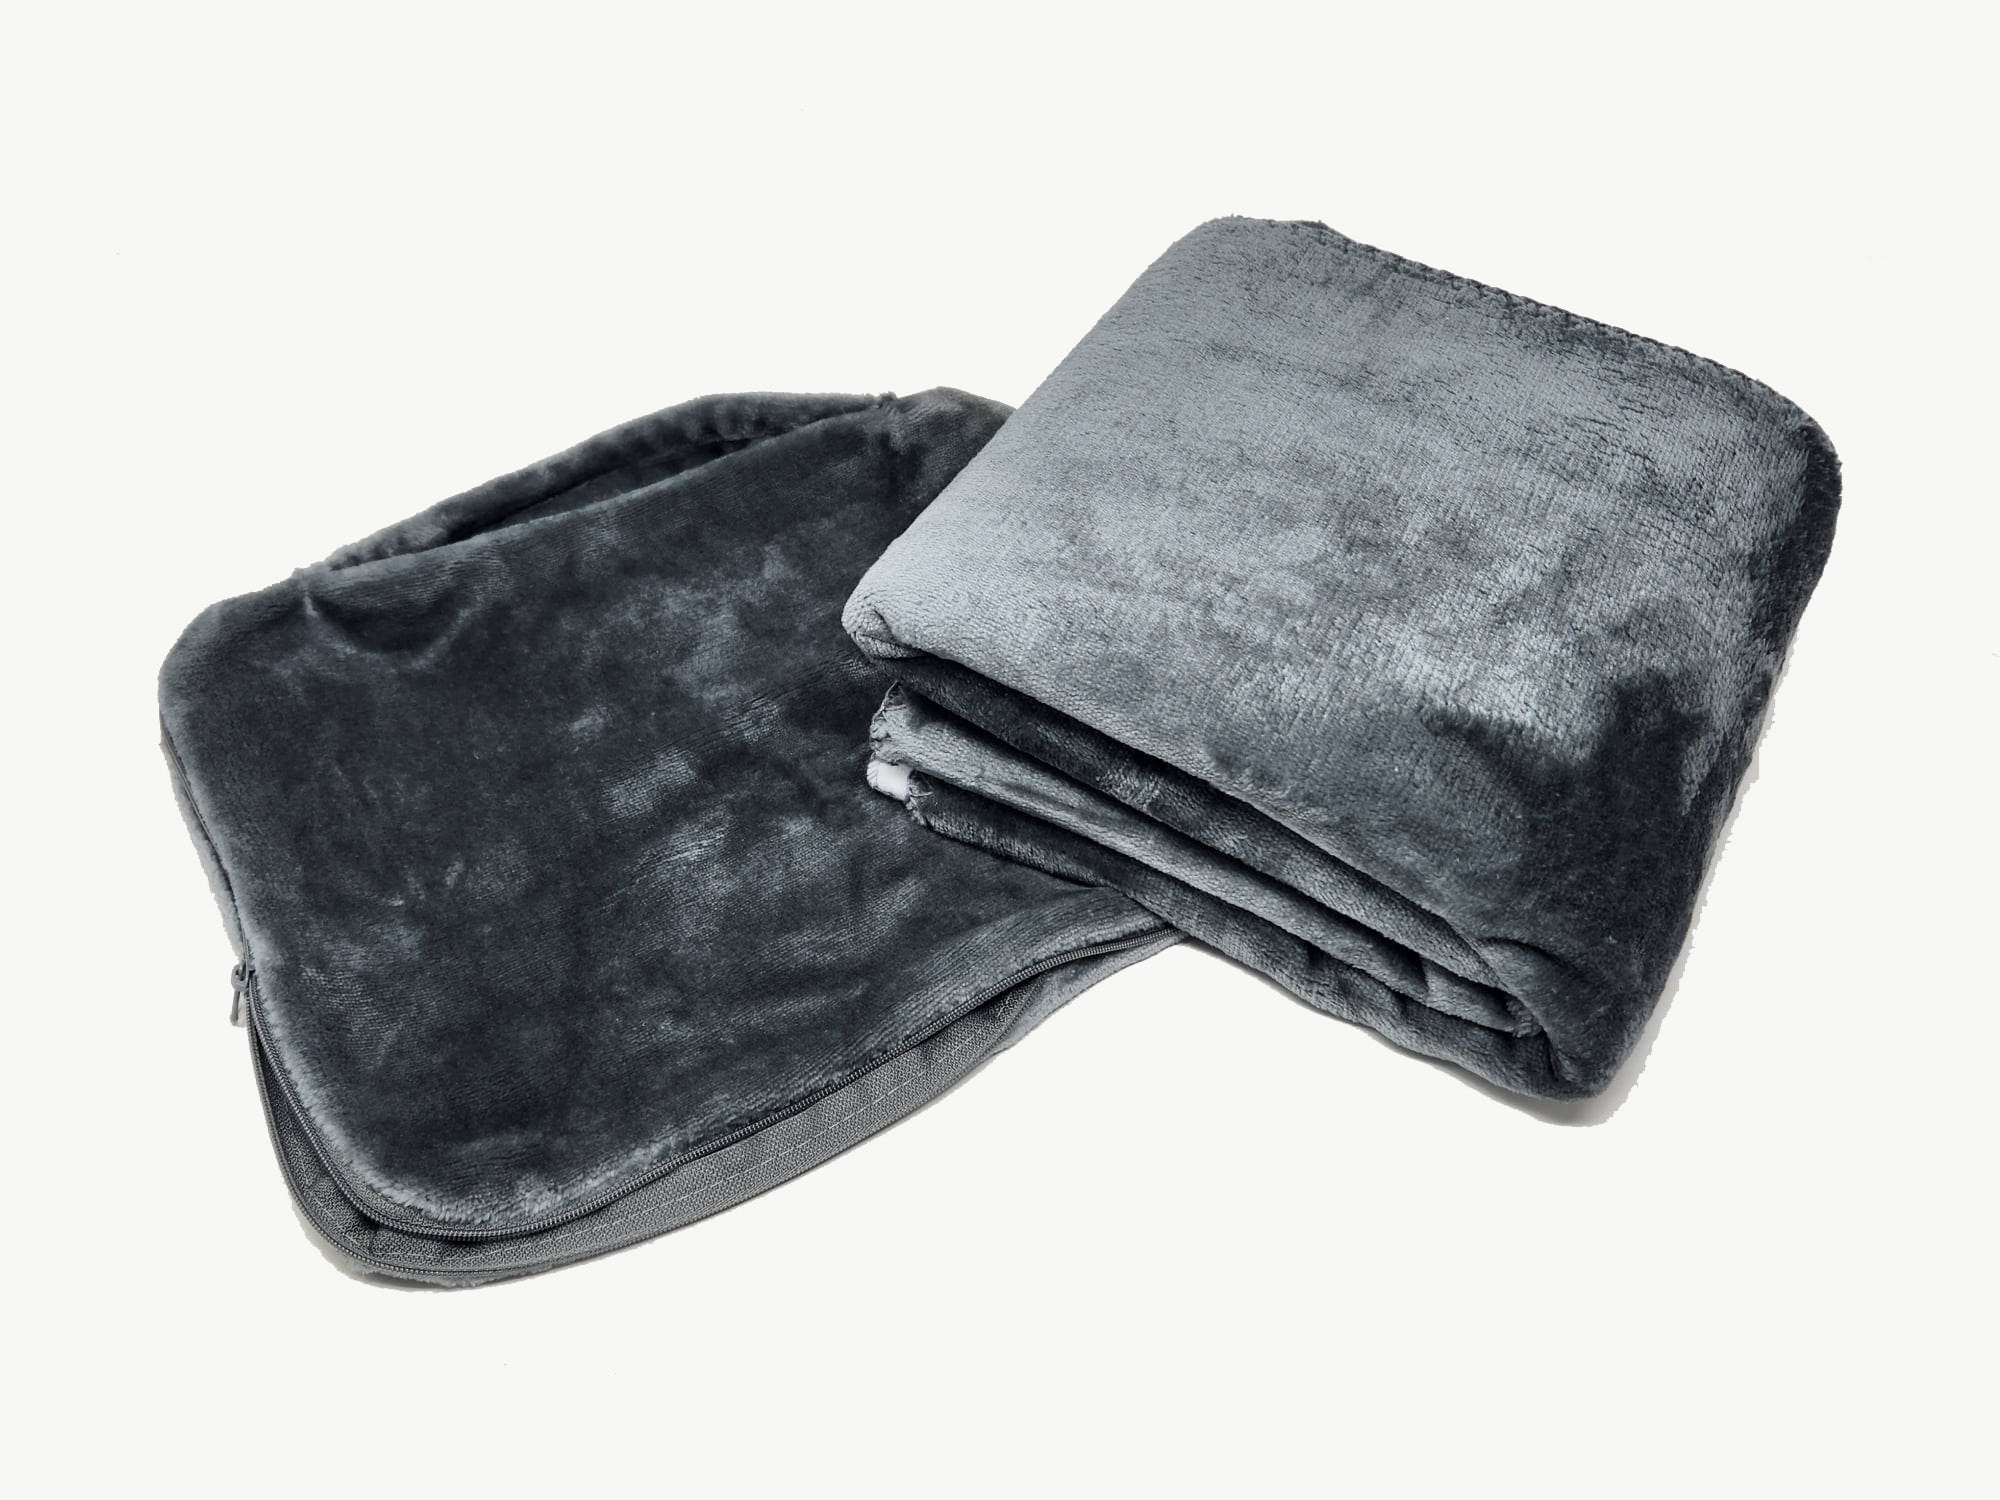 Silver Labrador Retriever Soft Travel Blanket with Bag - the-store.com